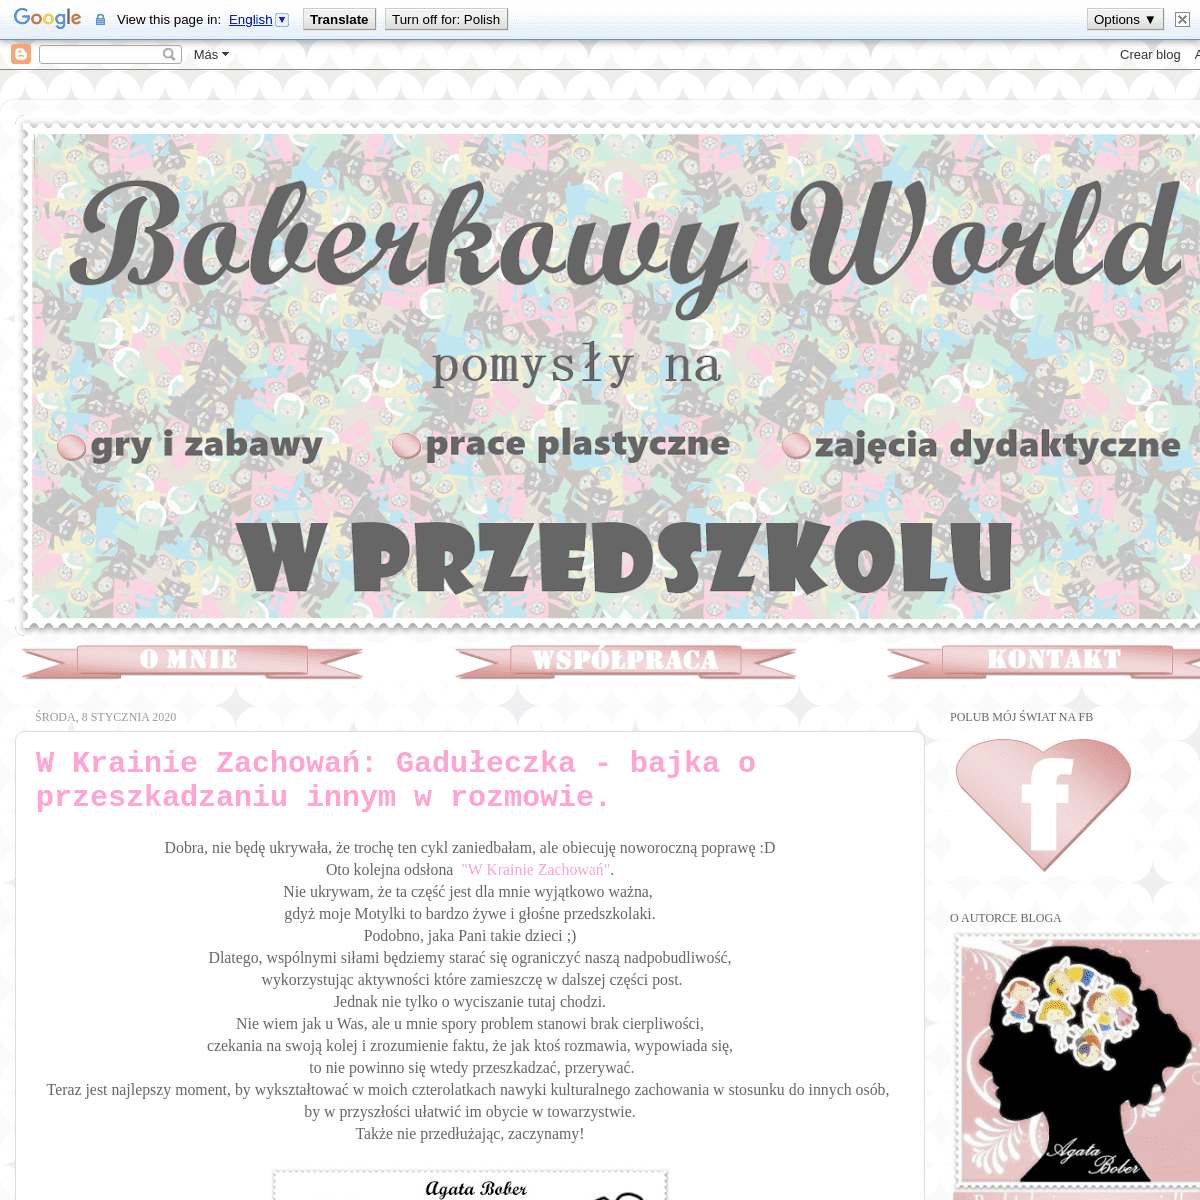 A complete backup of boberkowy-world.blogspot.com